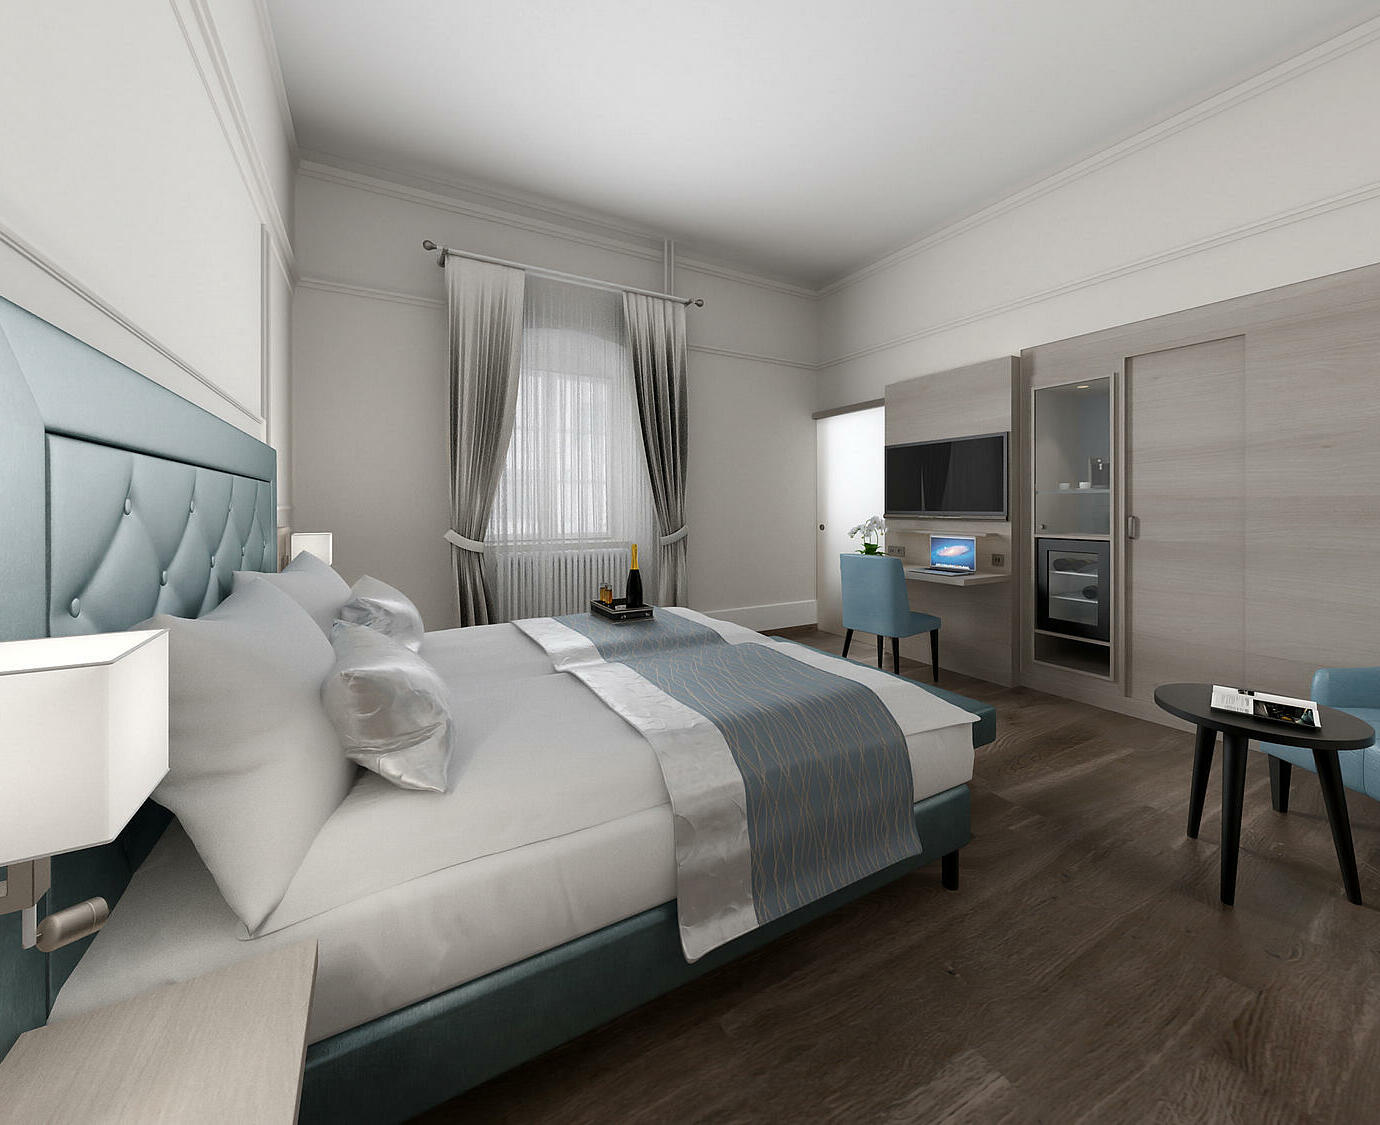 Neues Hotelzimmer im Hotel Domhof in Speyer